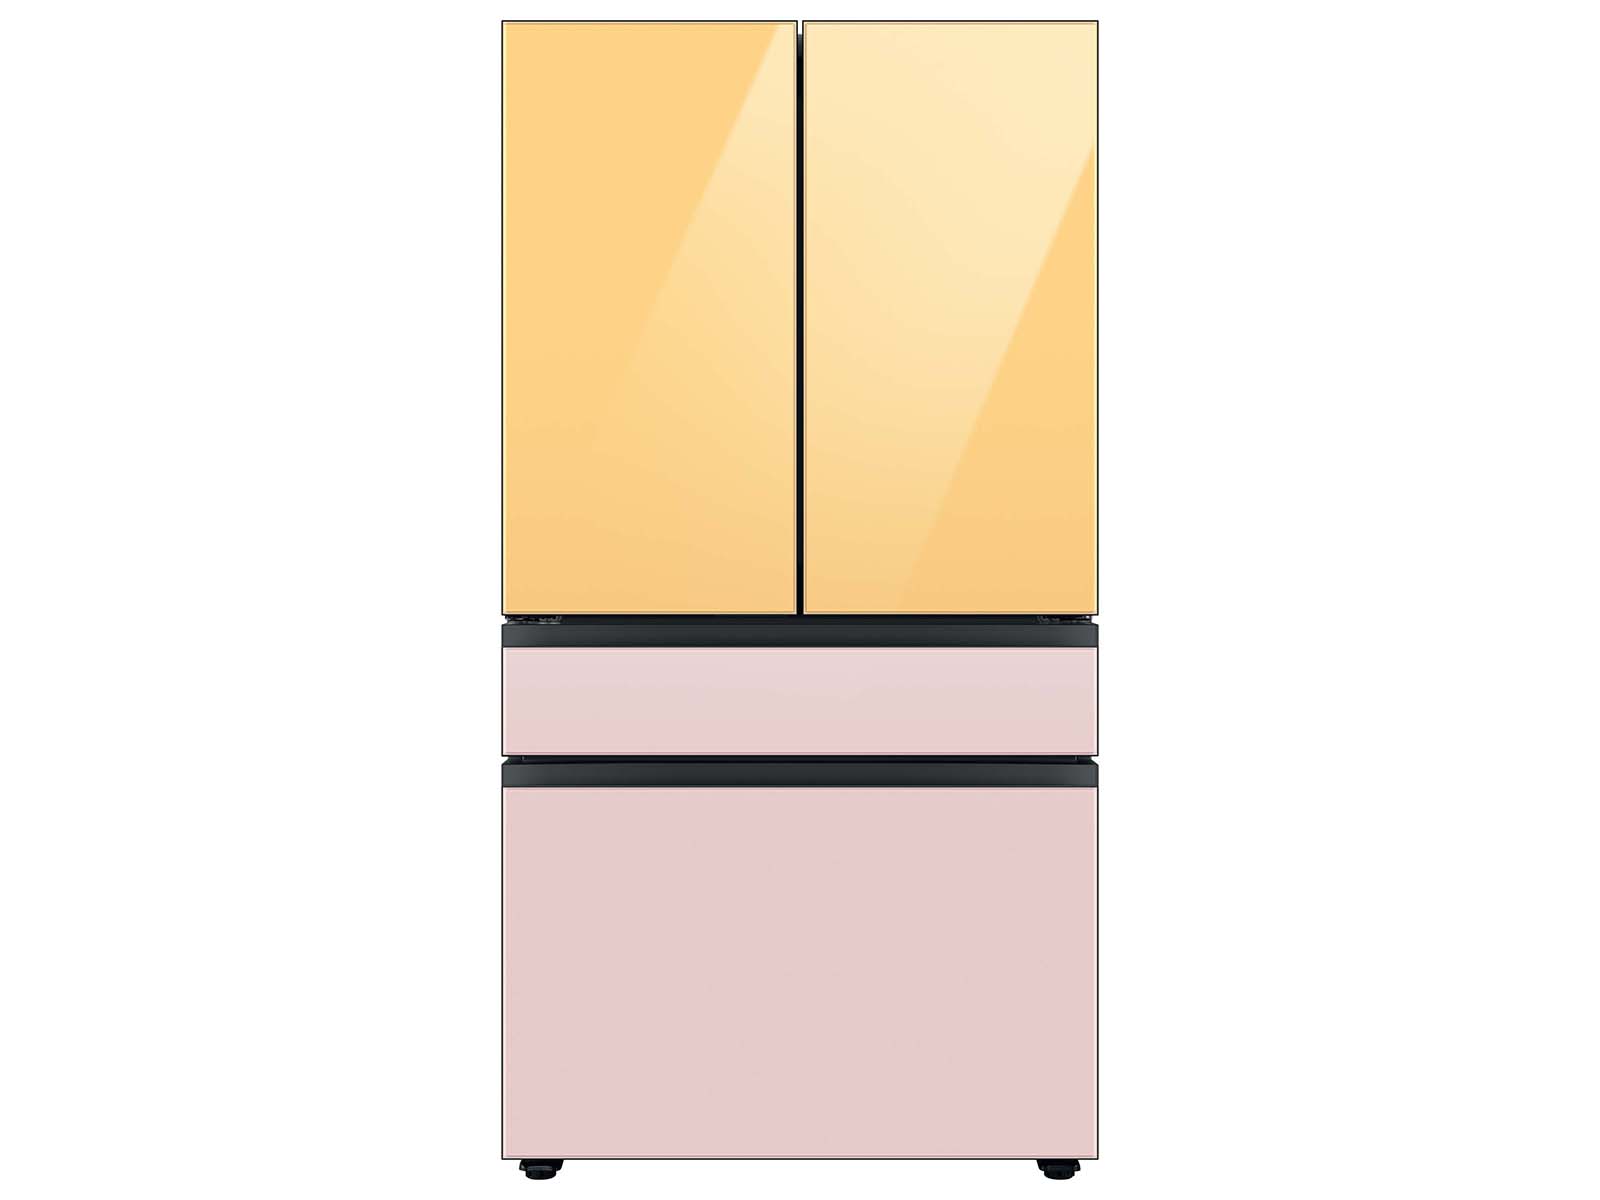 Thumbnail image of Bespoke 4-Door French Door Refrigerator Panel in Pink Glass - Bottom Panel